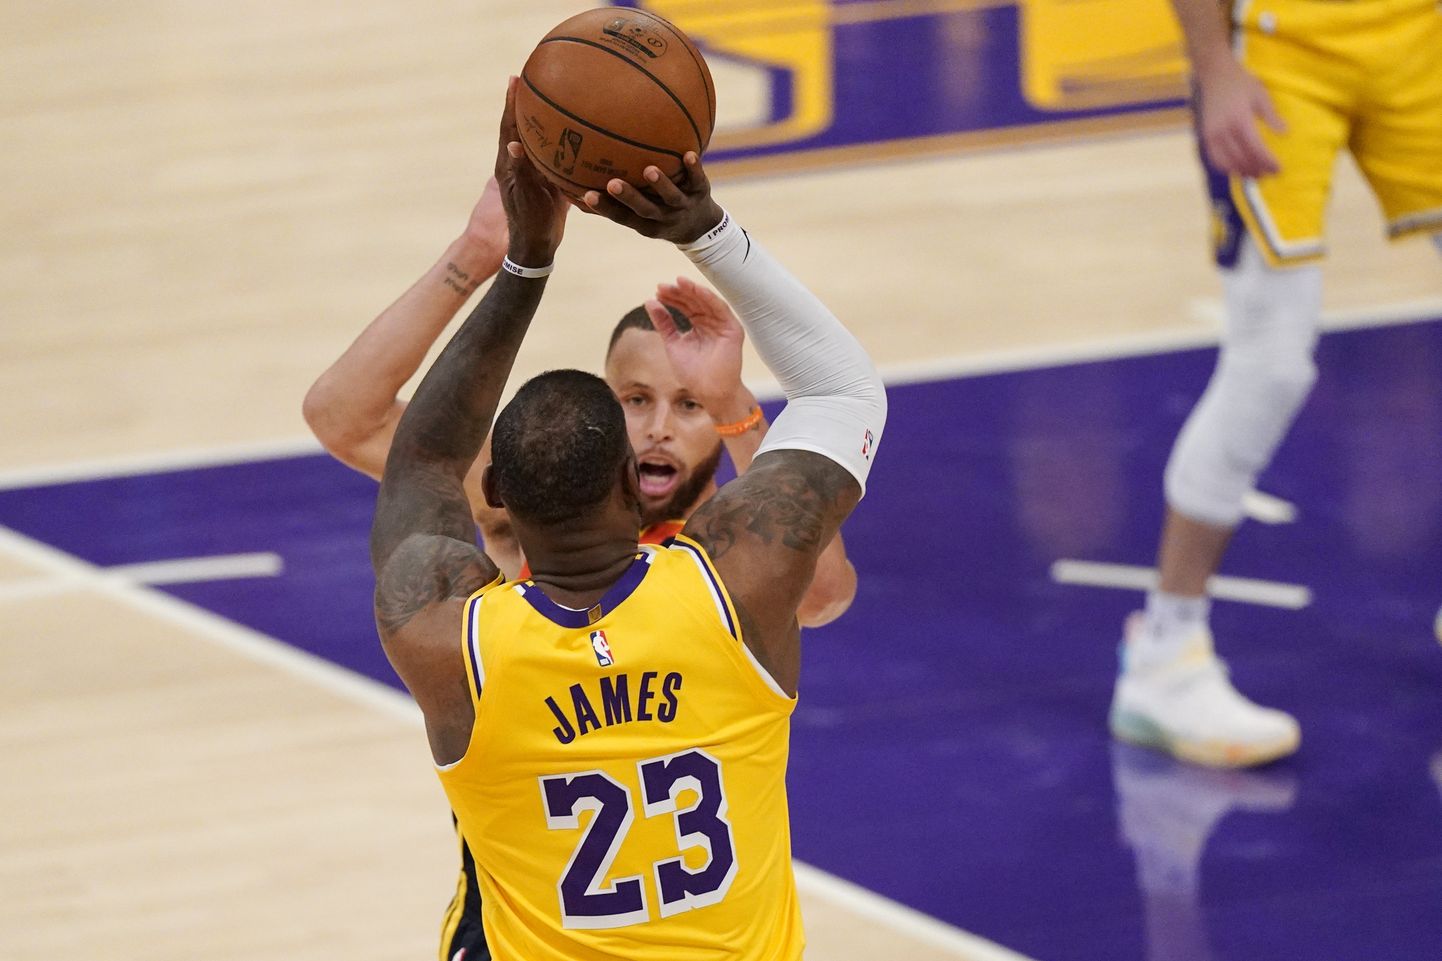 Леброн Джеймс вывел "Лос-Анджелес Лейкерс" в плей-офф Национальной баскетбольной ассоциации (НБА).